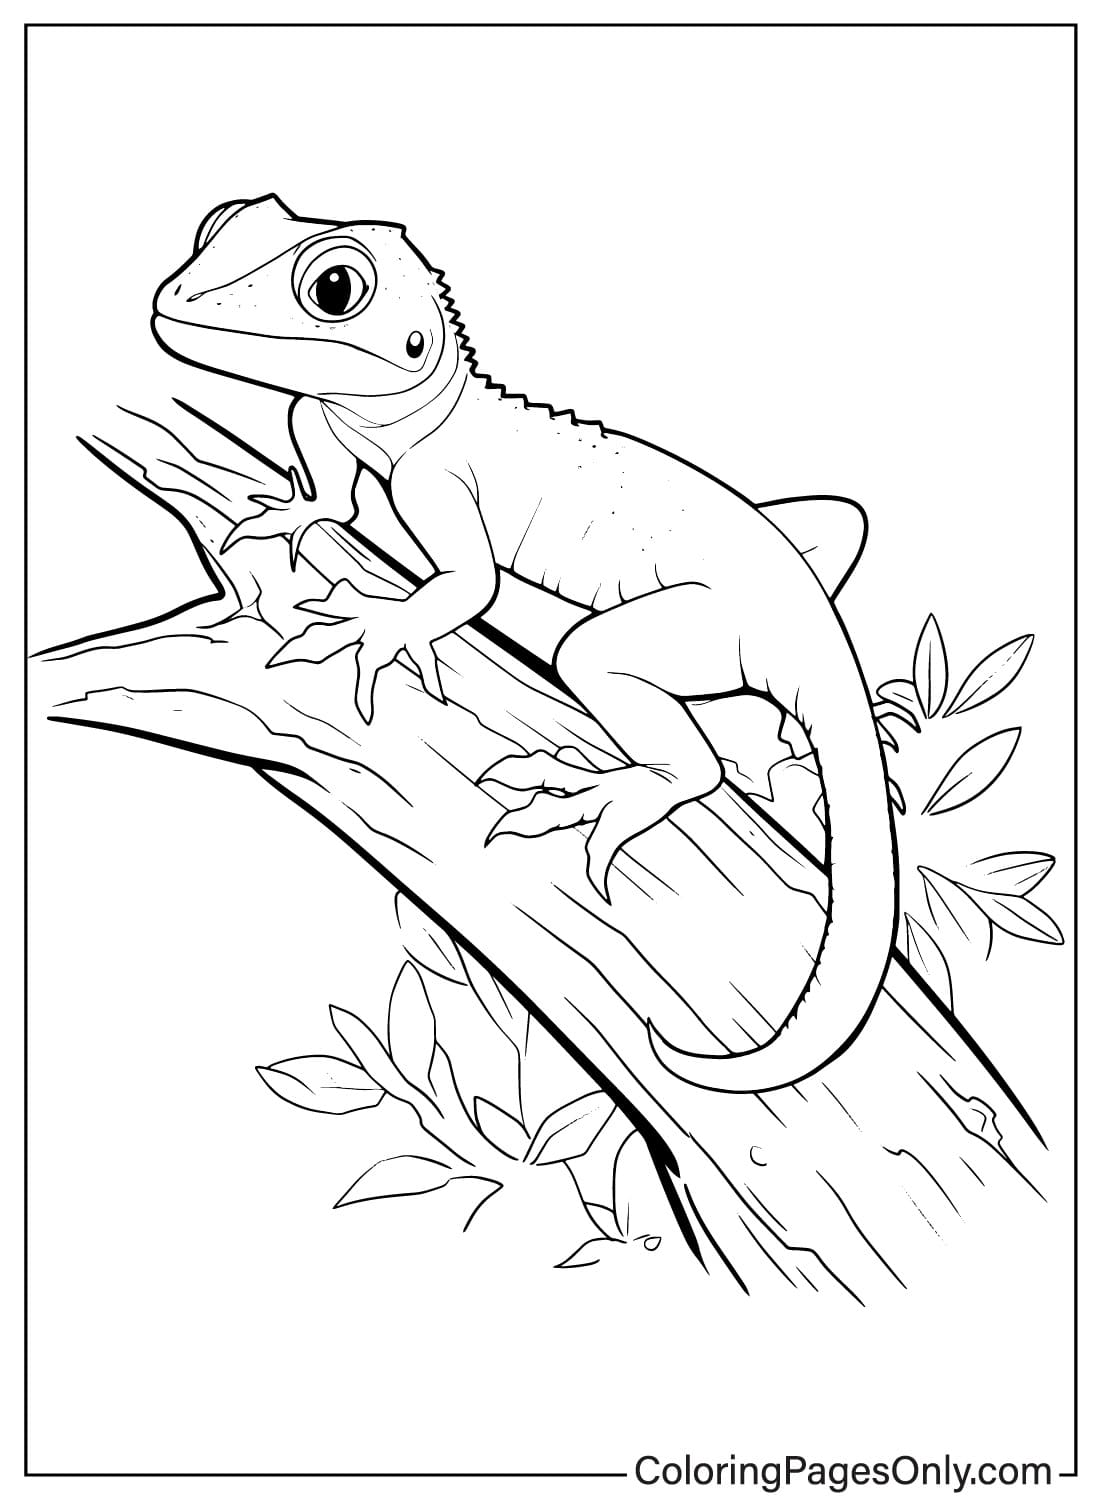 Página para colorear de lagarto imprimible de Lizard